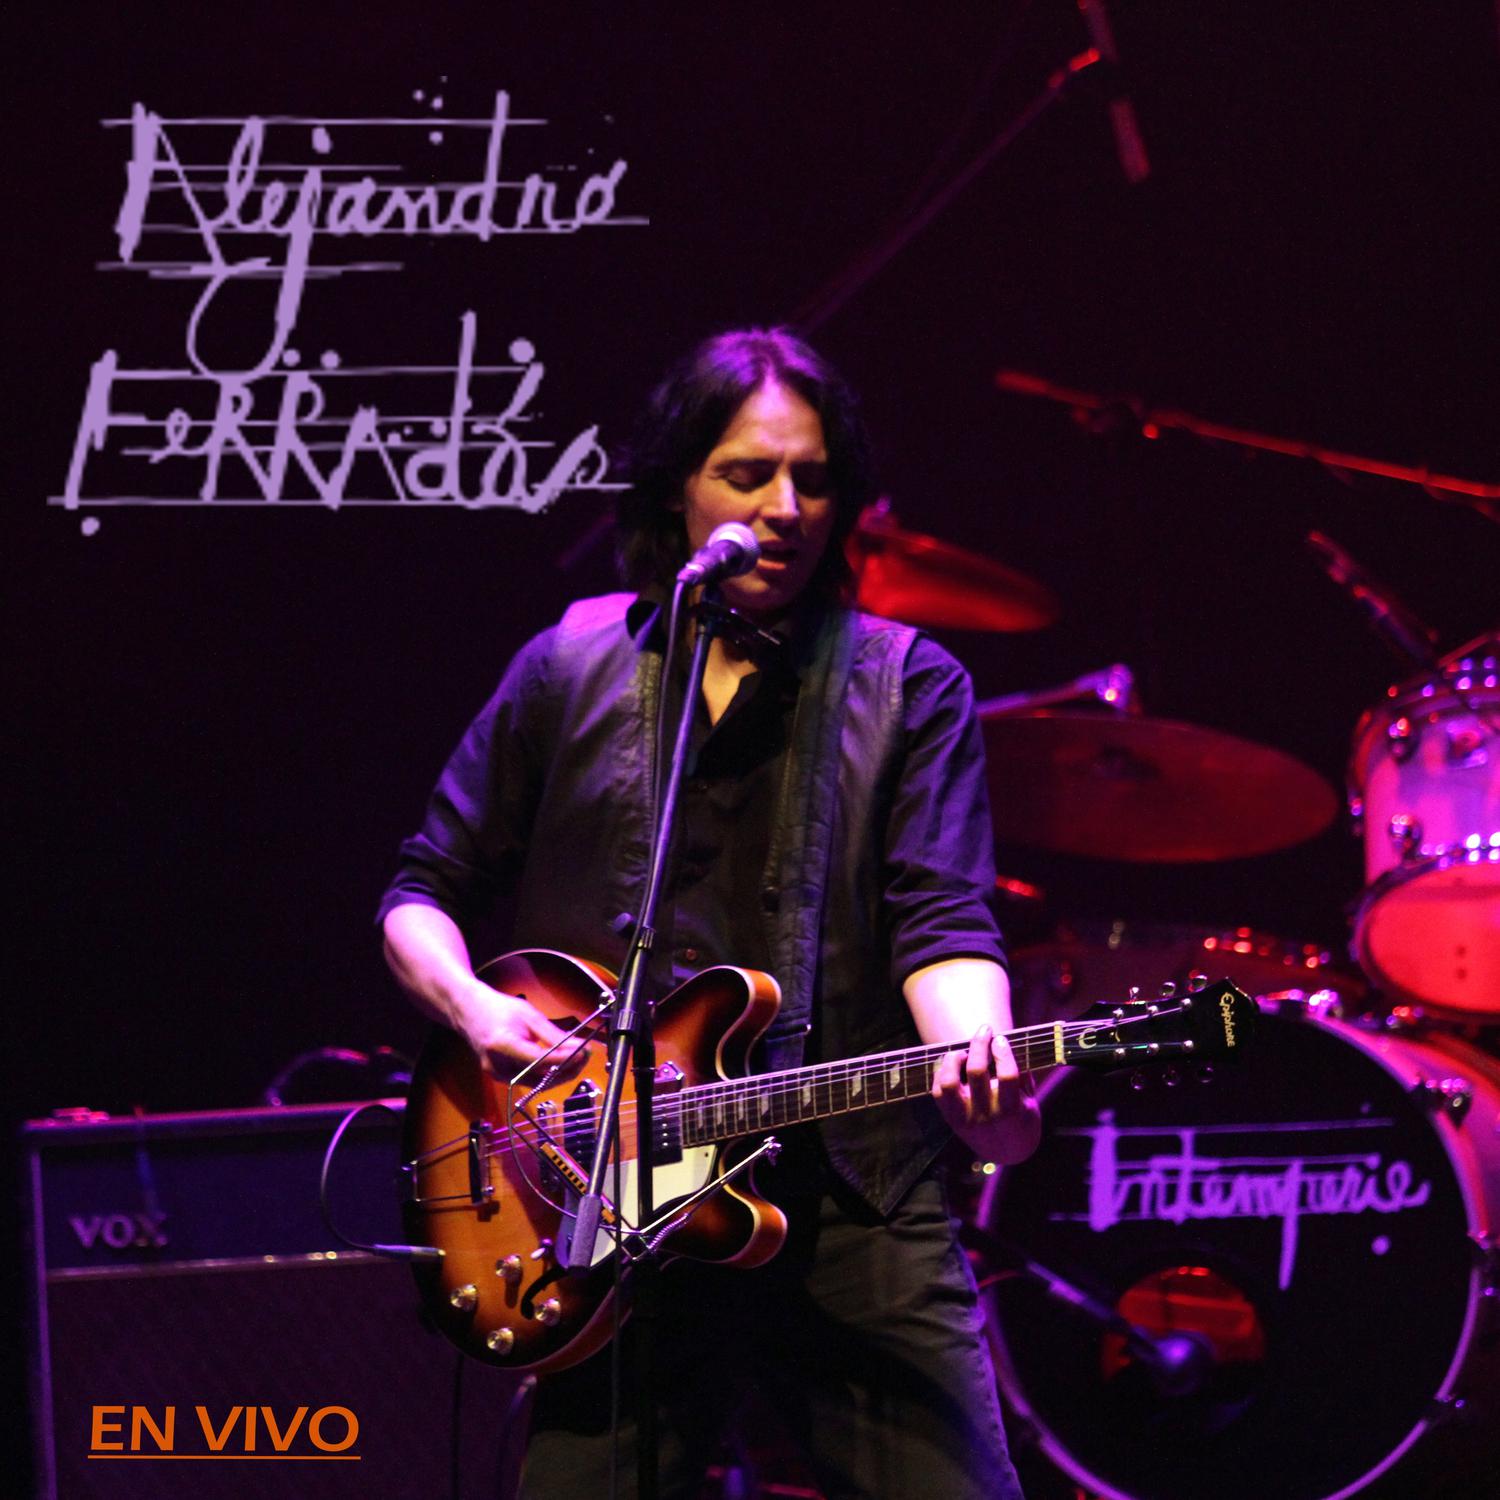 Alejandro Ferradás - Intemperie (En Vivo)